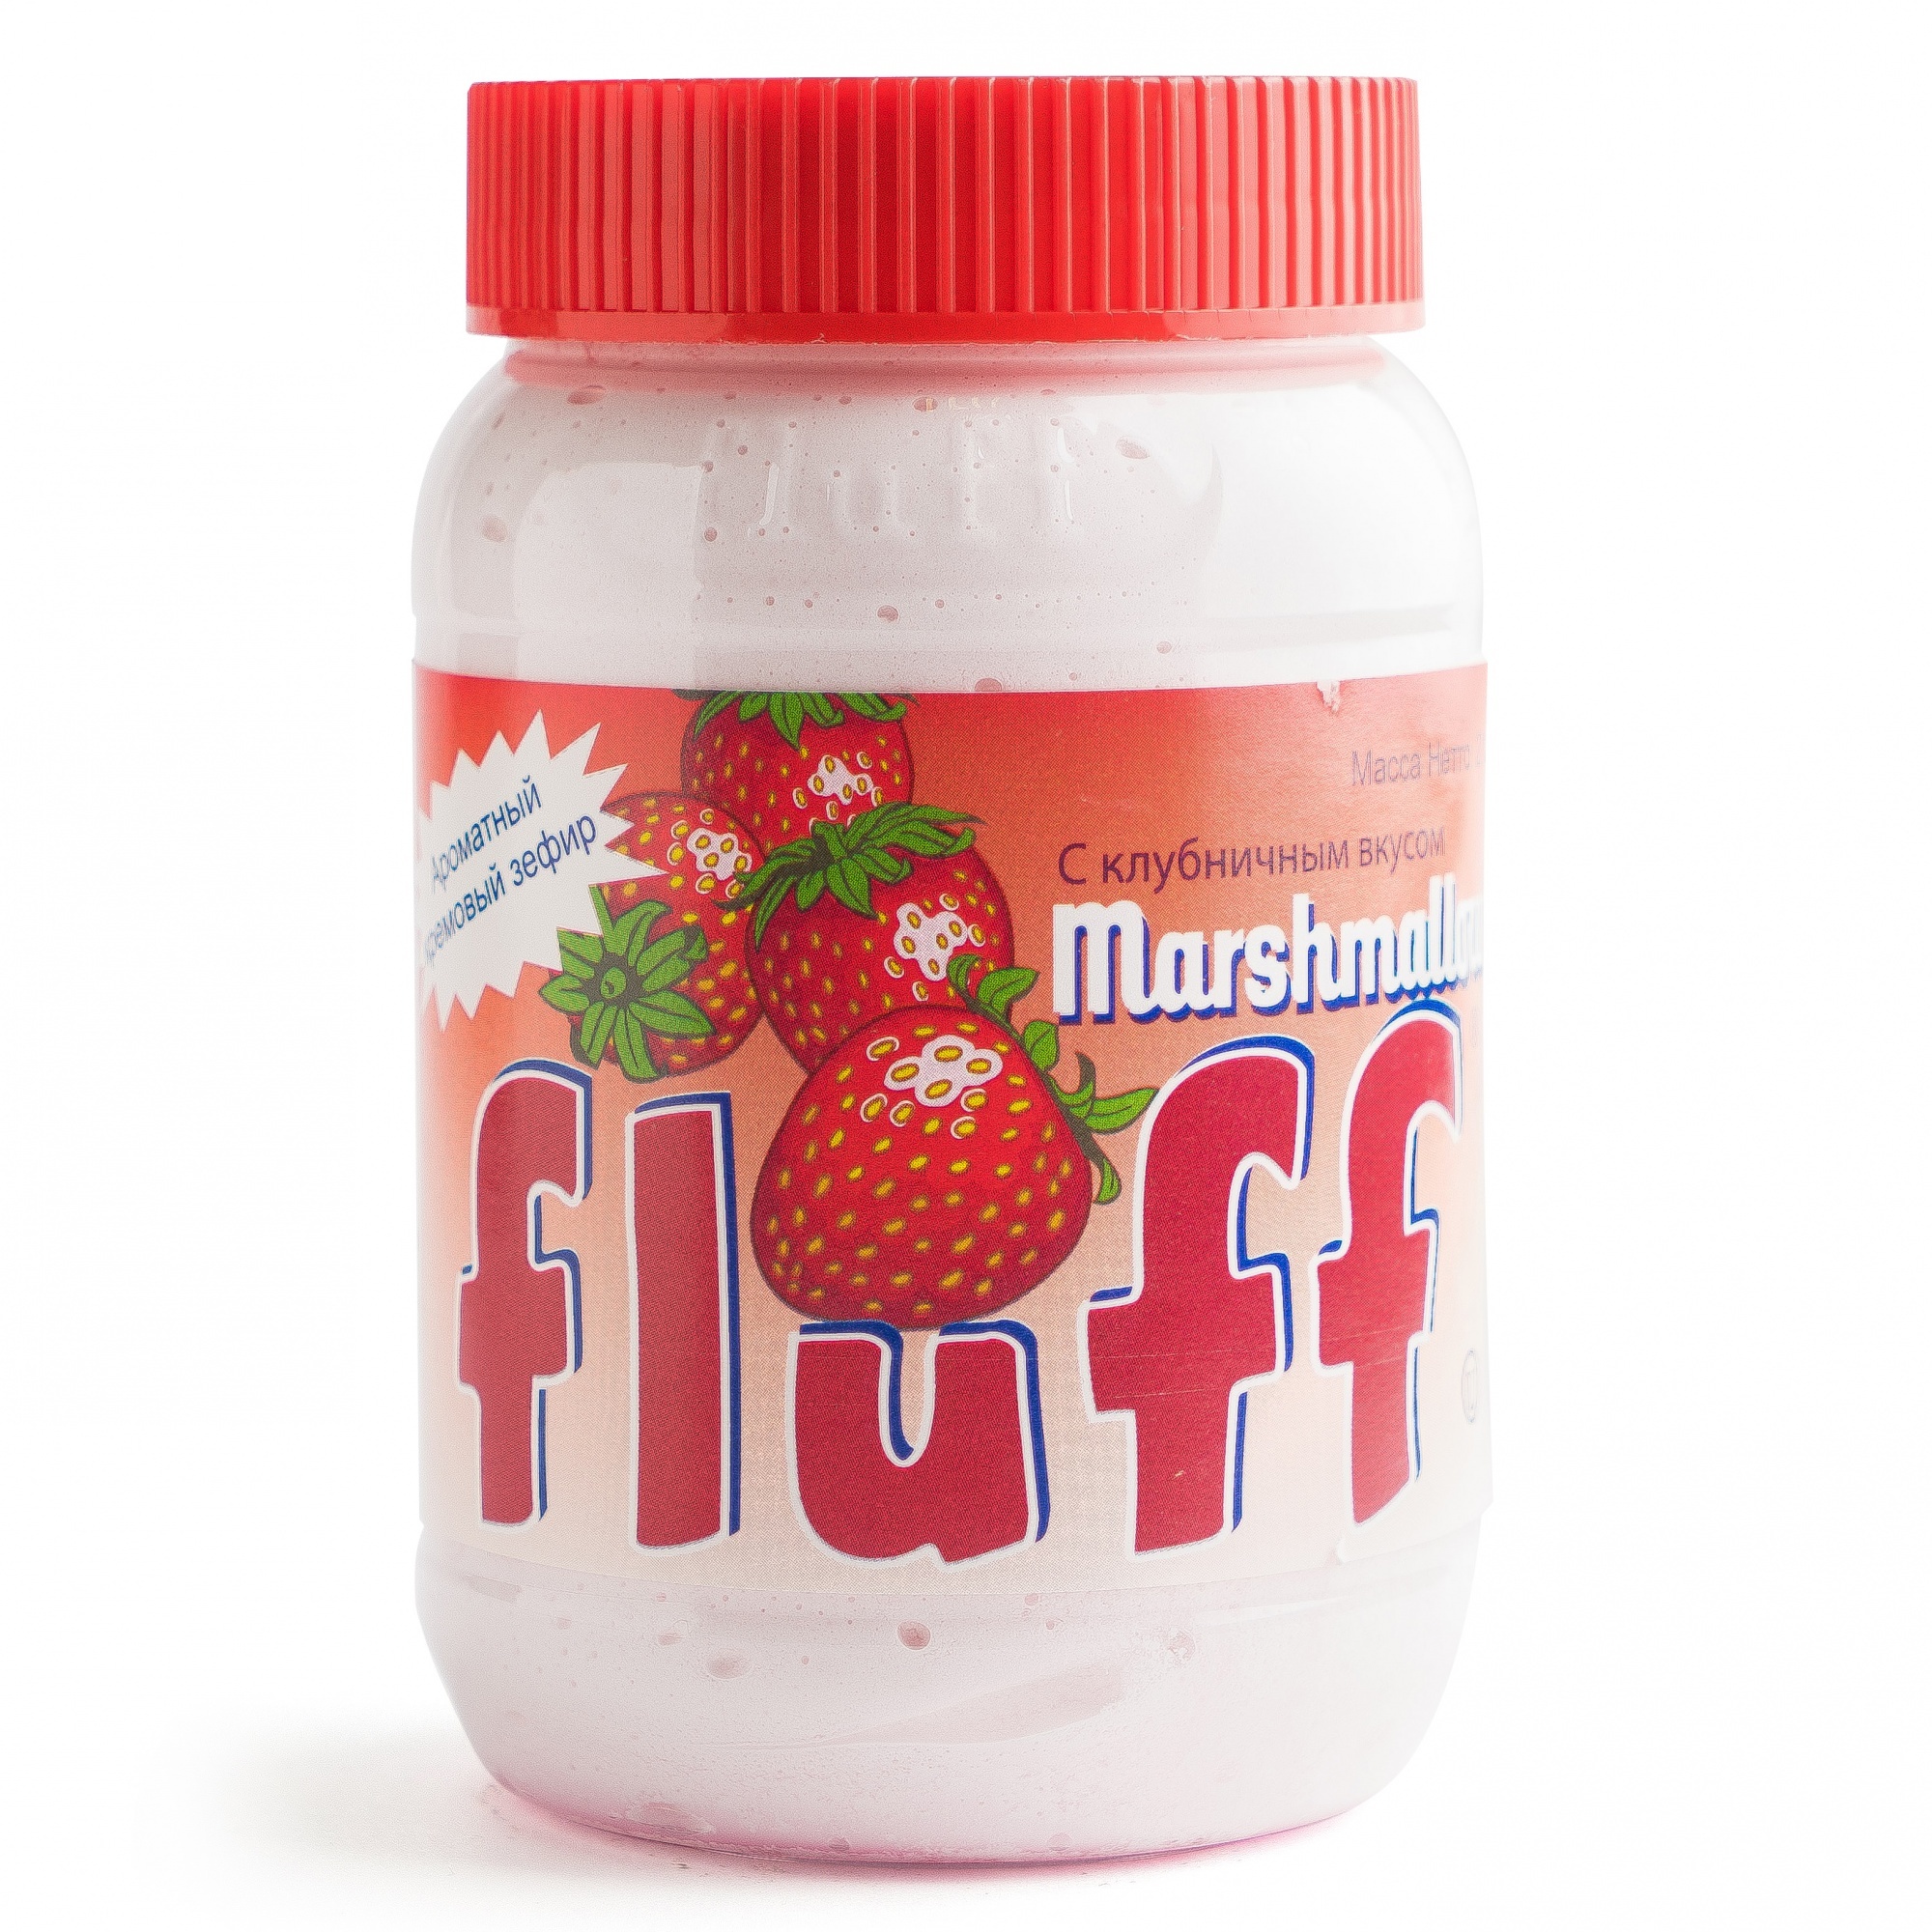 Кремовый зефир маршмеллоу Fluff (Флафф) с клубничным вкусом 213 - купить в ...